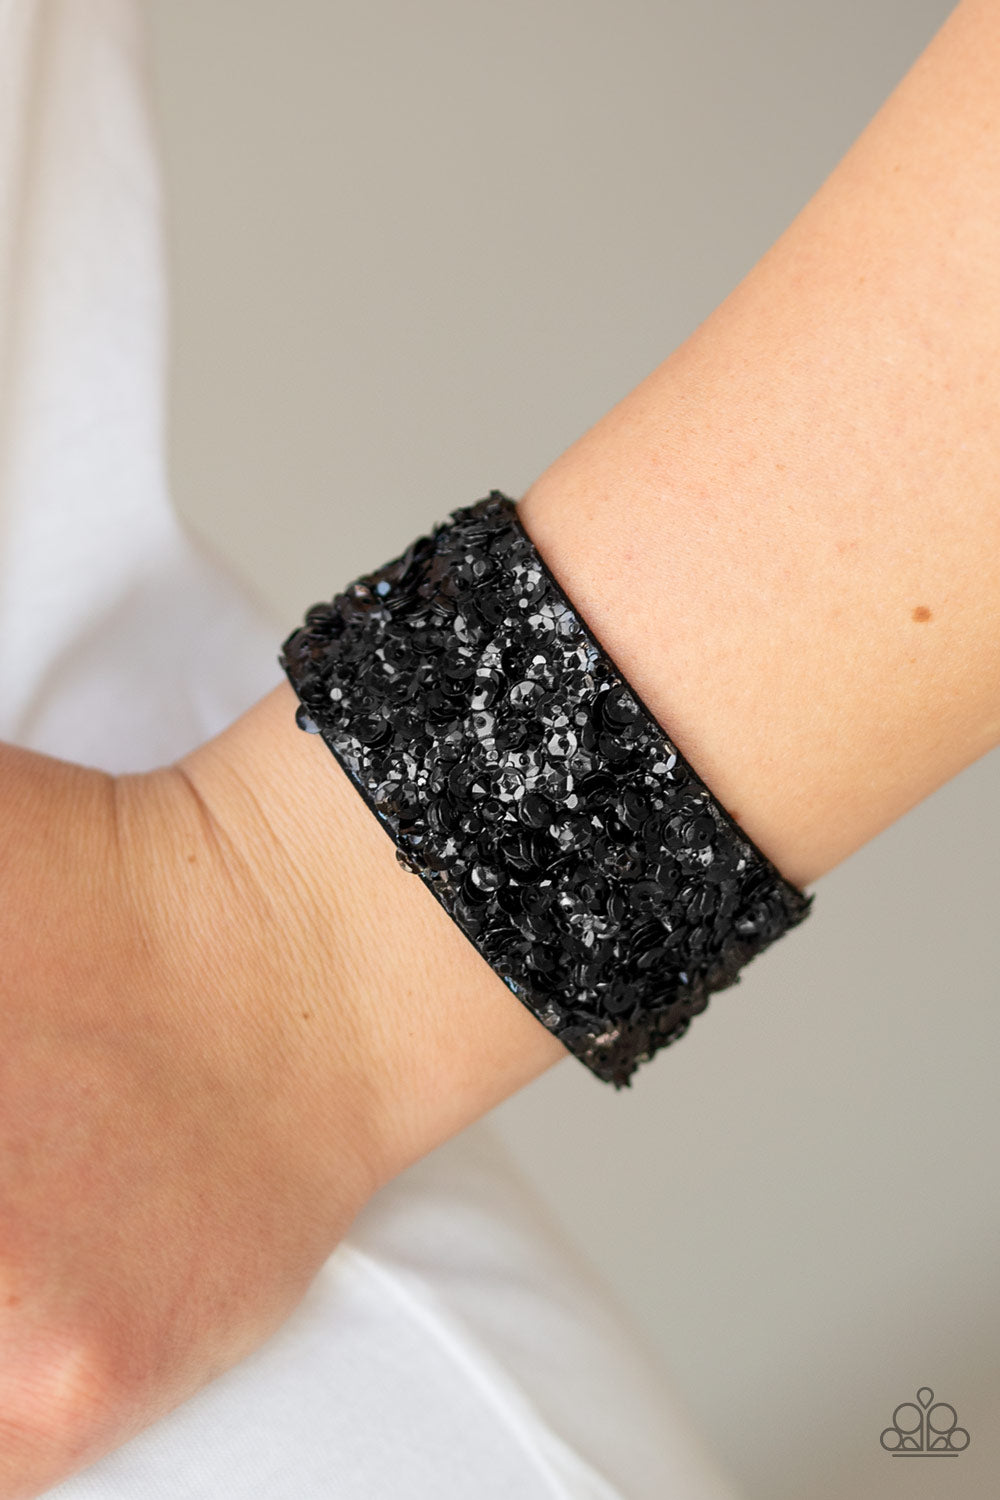 Starry Sequins - Black sequin wrap bracelet